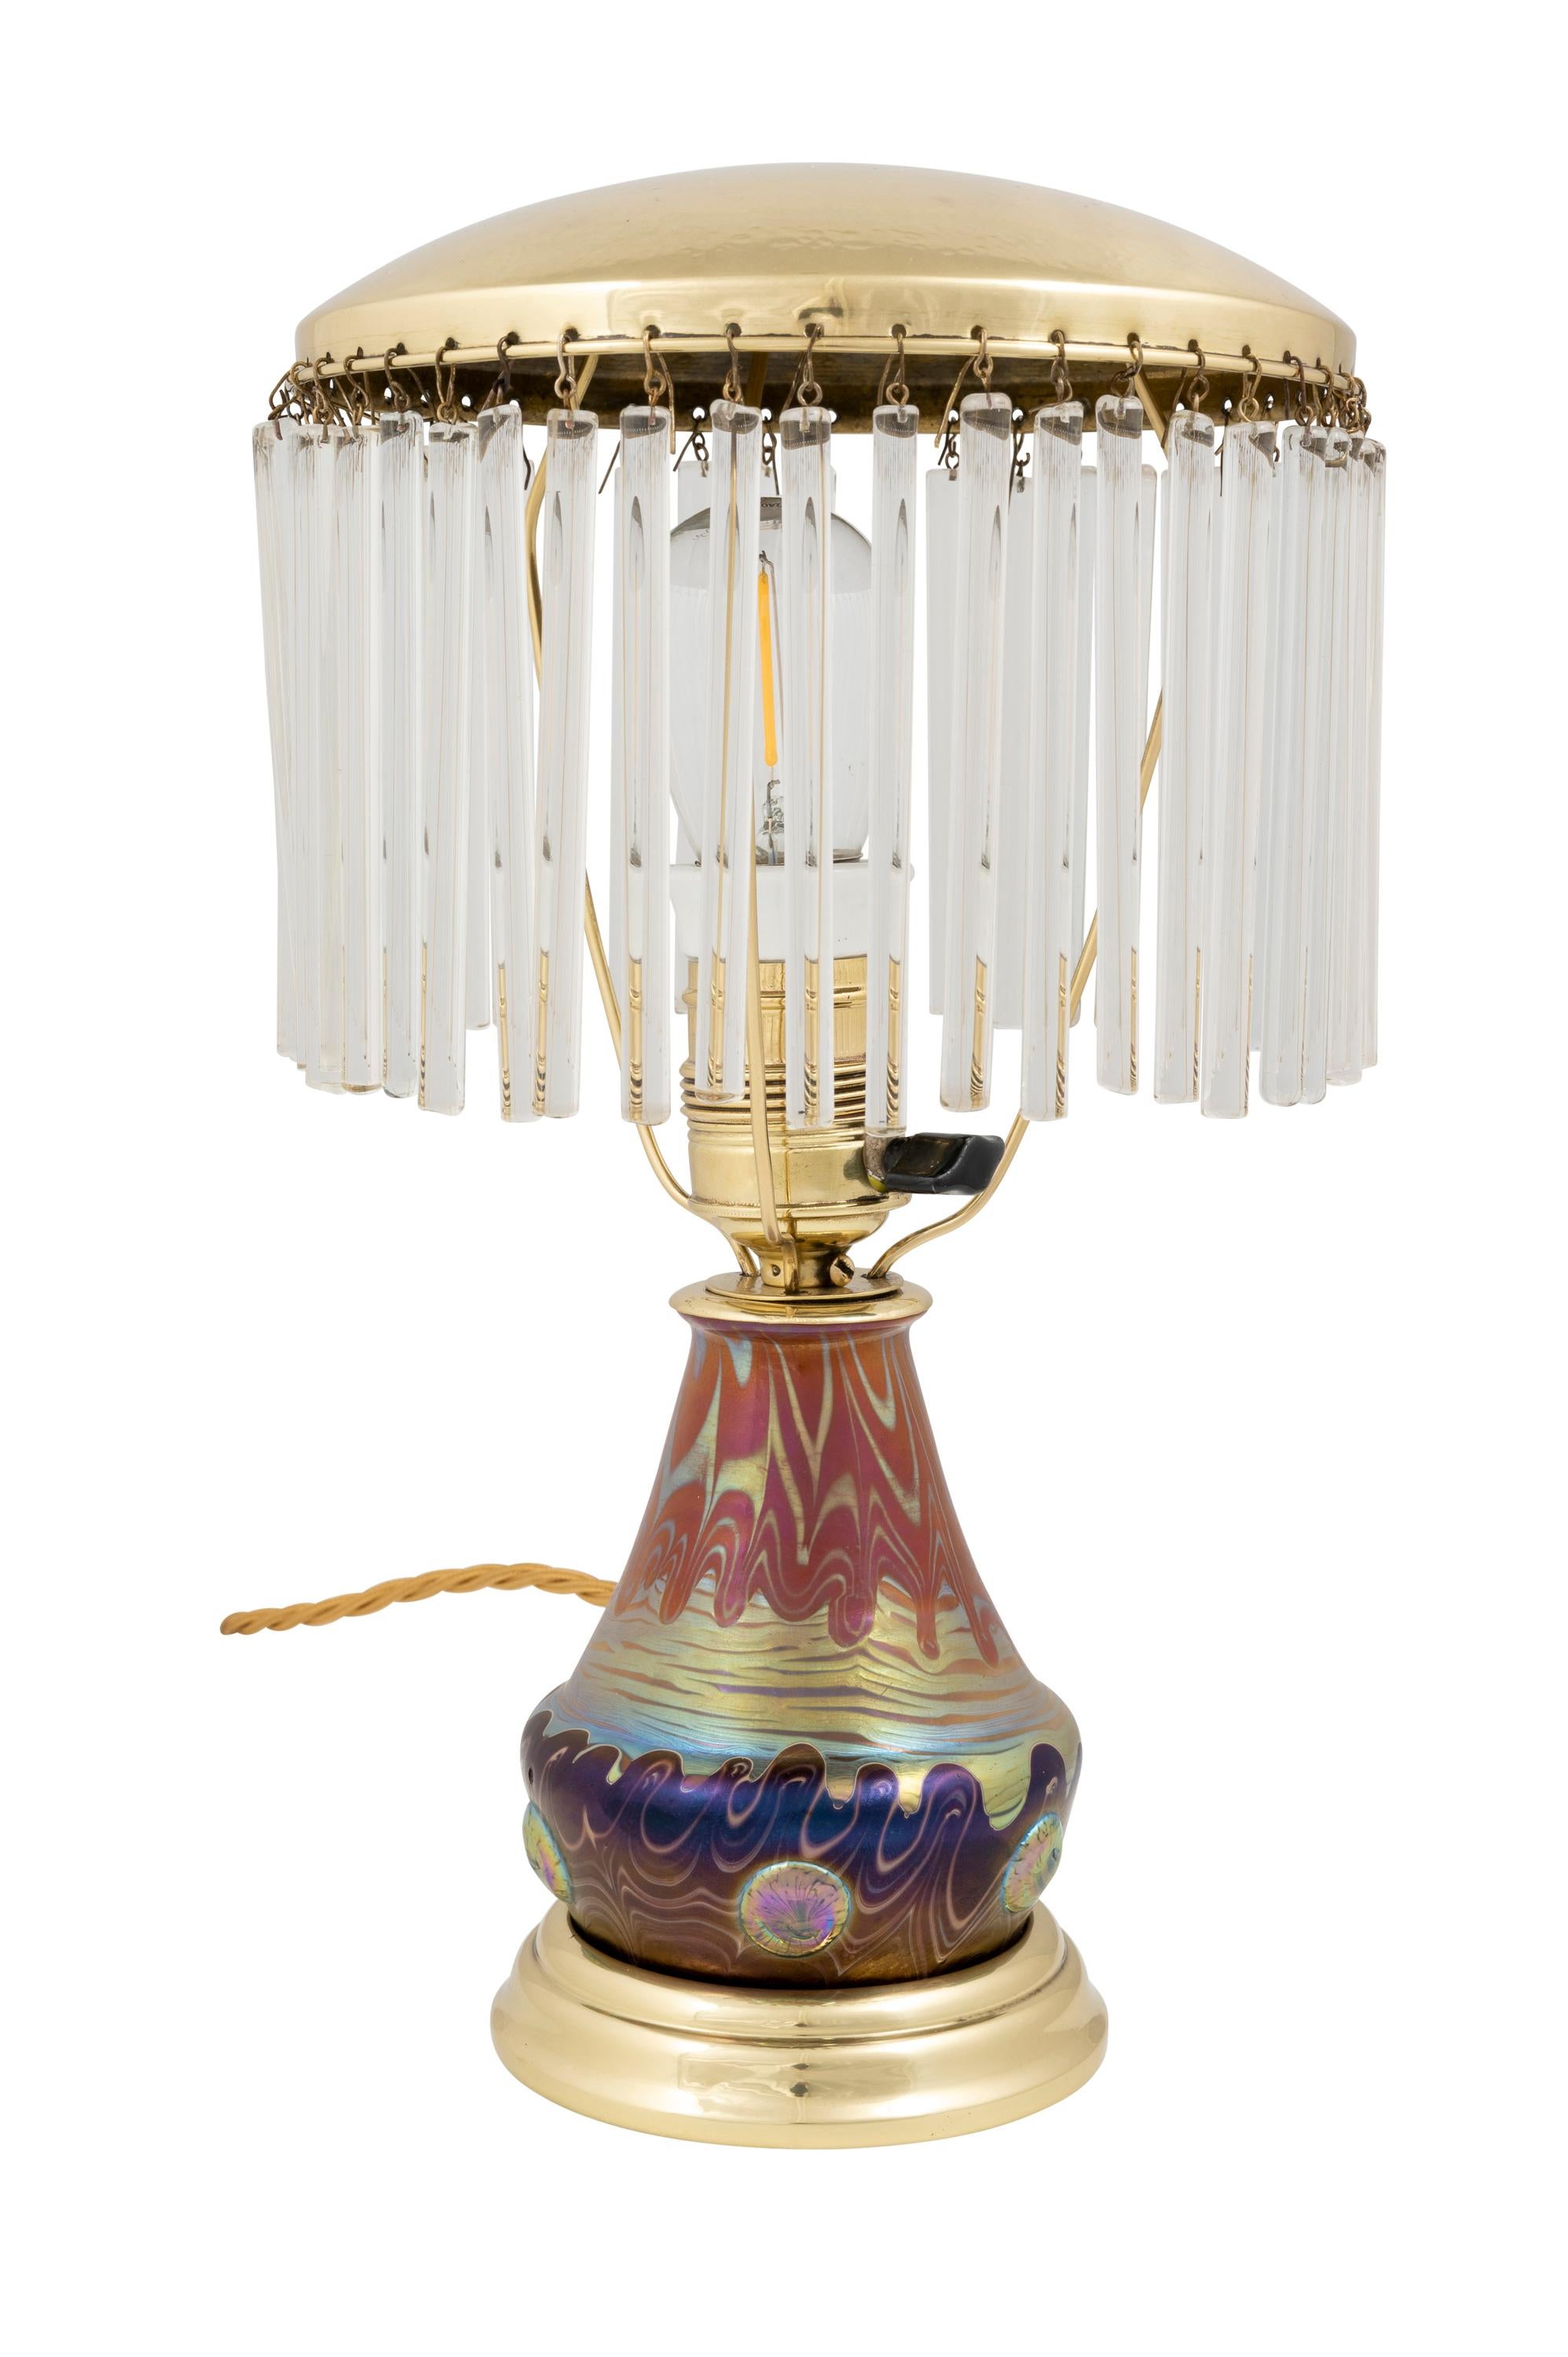 Lampe de table avec tiges de verre, fabriquée par Johann Loetz Witwe, décoration Phenomen Genre 358, vers 1901

Cette lampe de table est un exemple extraordinaire de la capacité de conception de la manufacture Loetz. La décoration Phenomen Genre 358